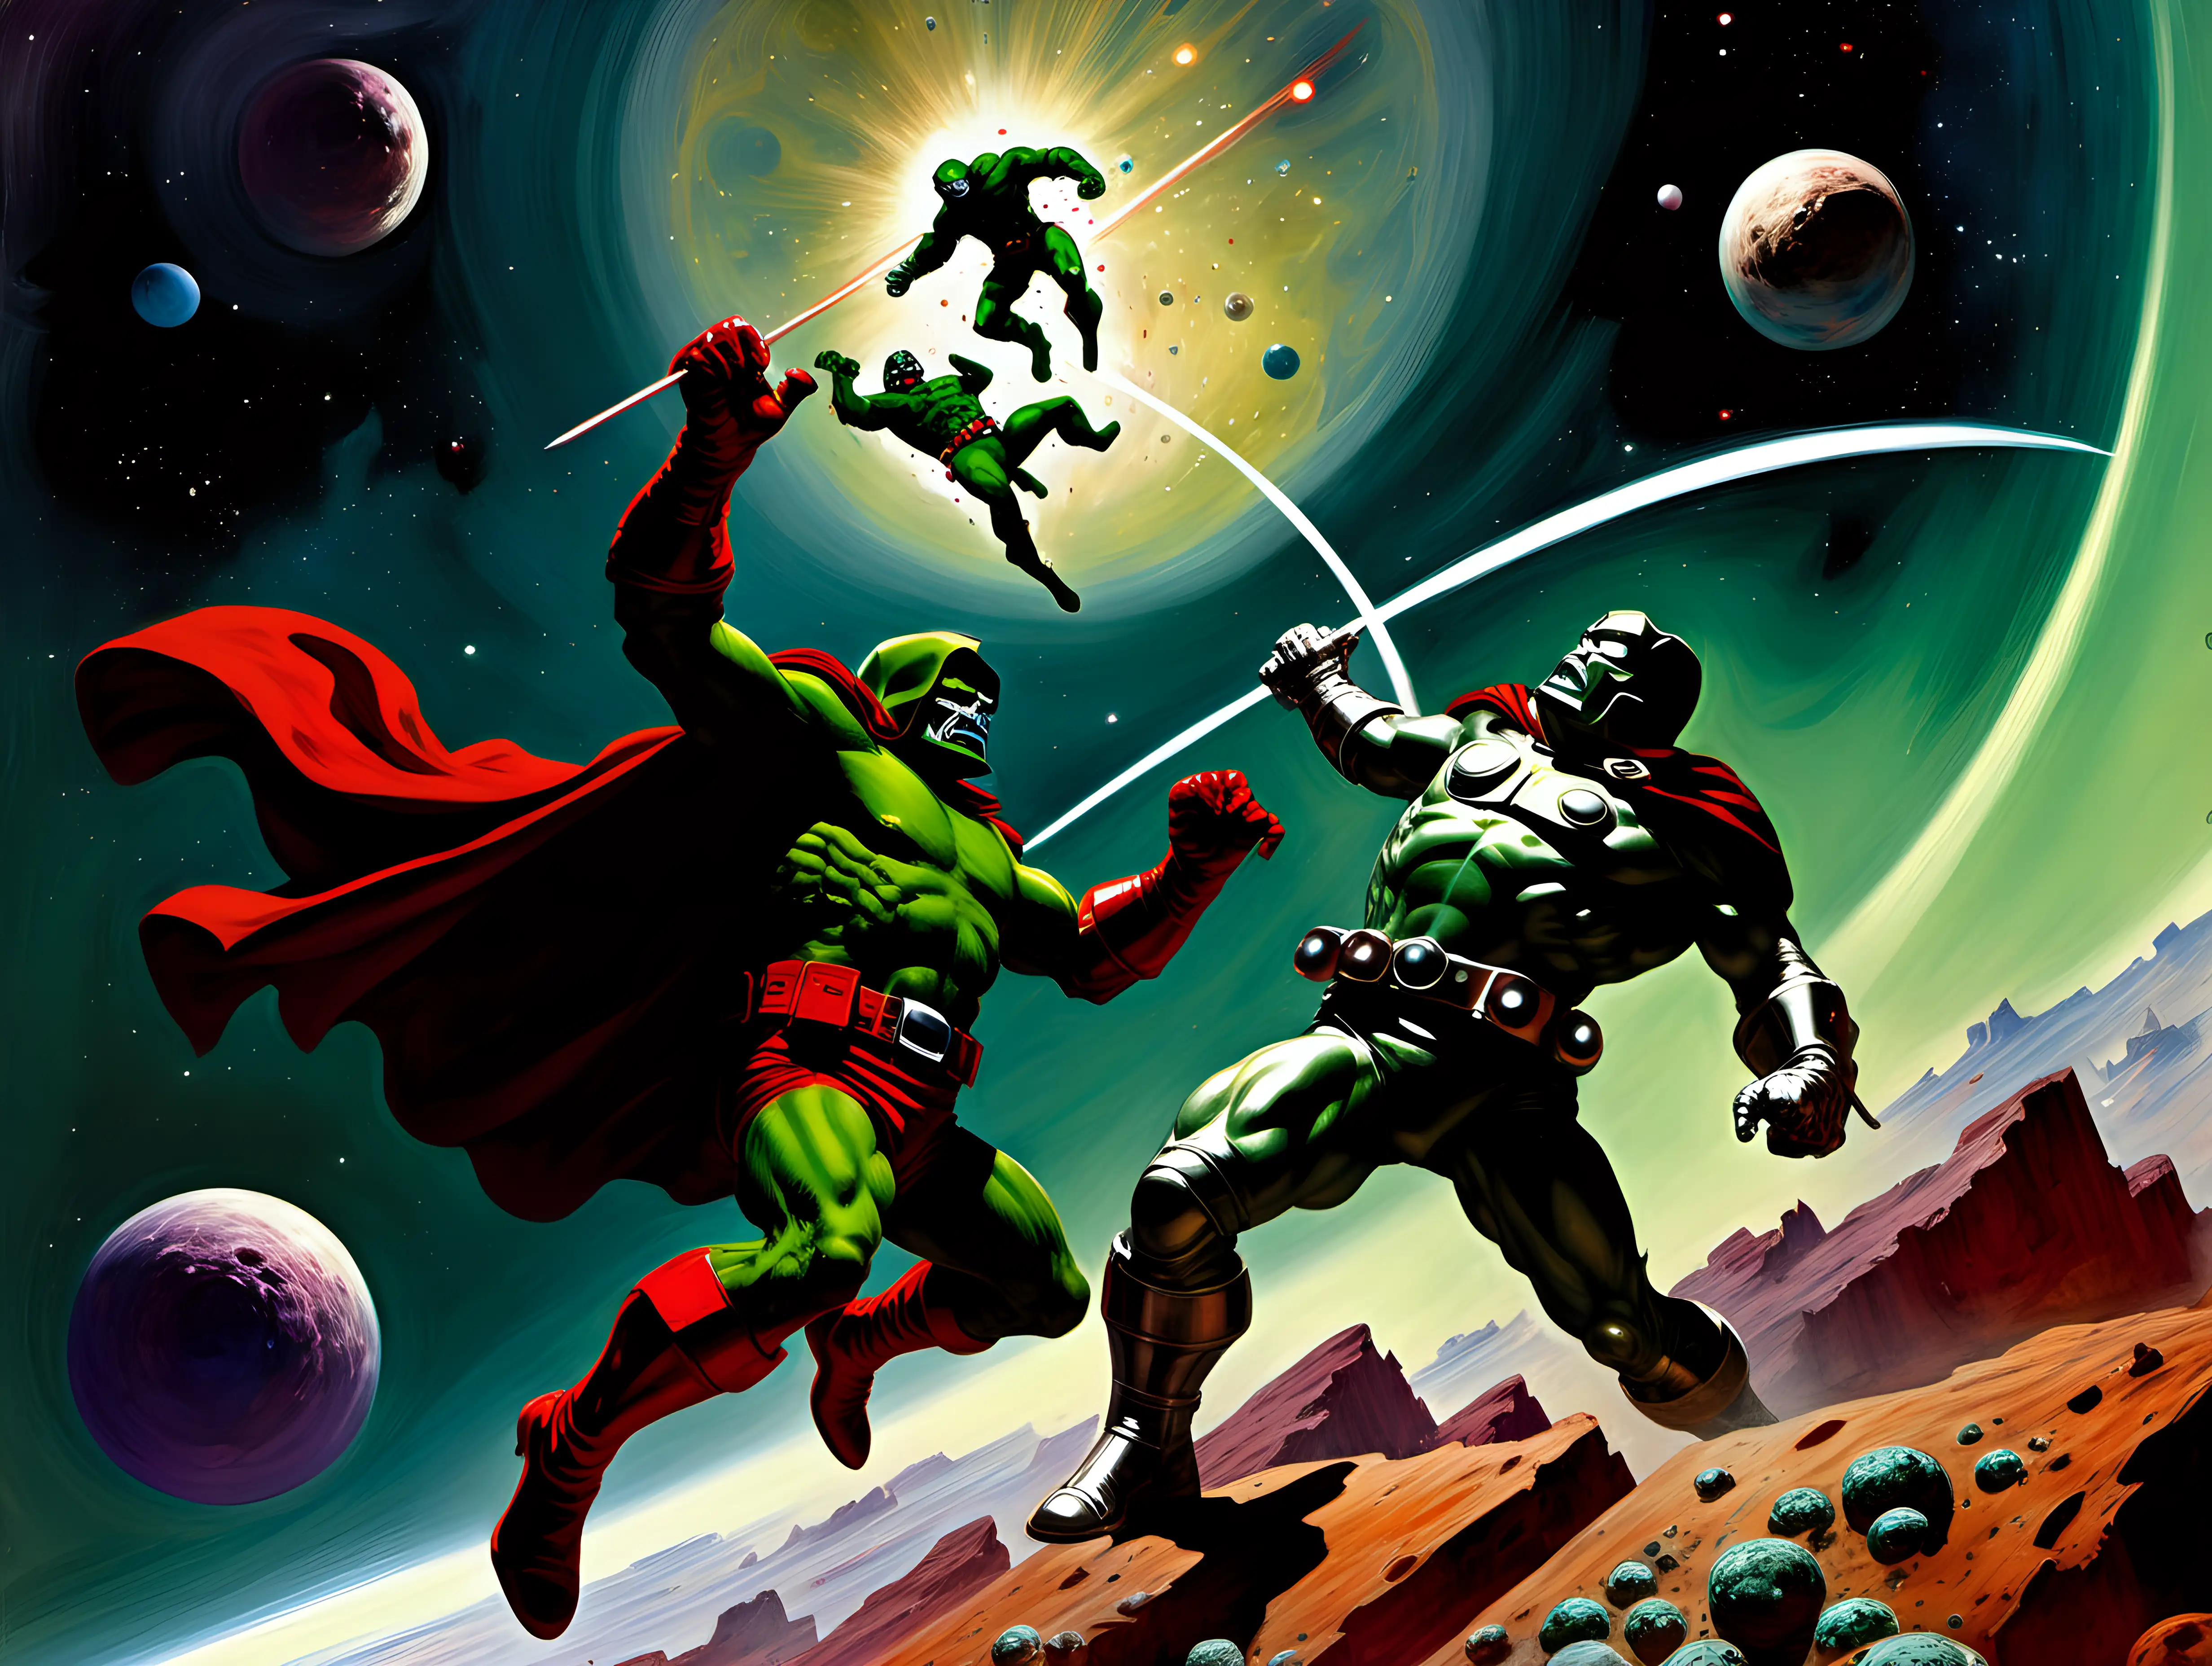 Epic Space Battle Daredevil vs Doctor Doom in Frank Frazetta Style